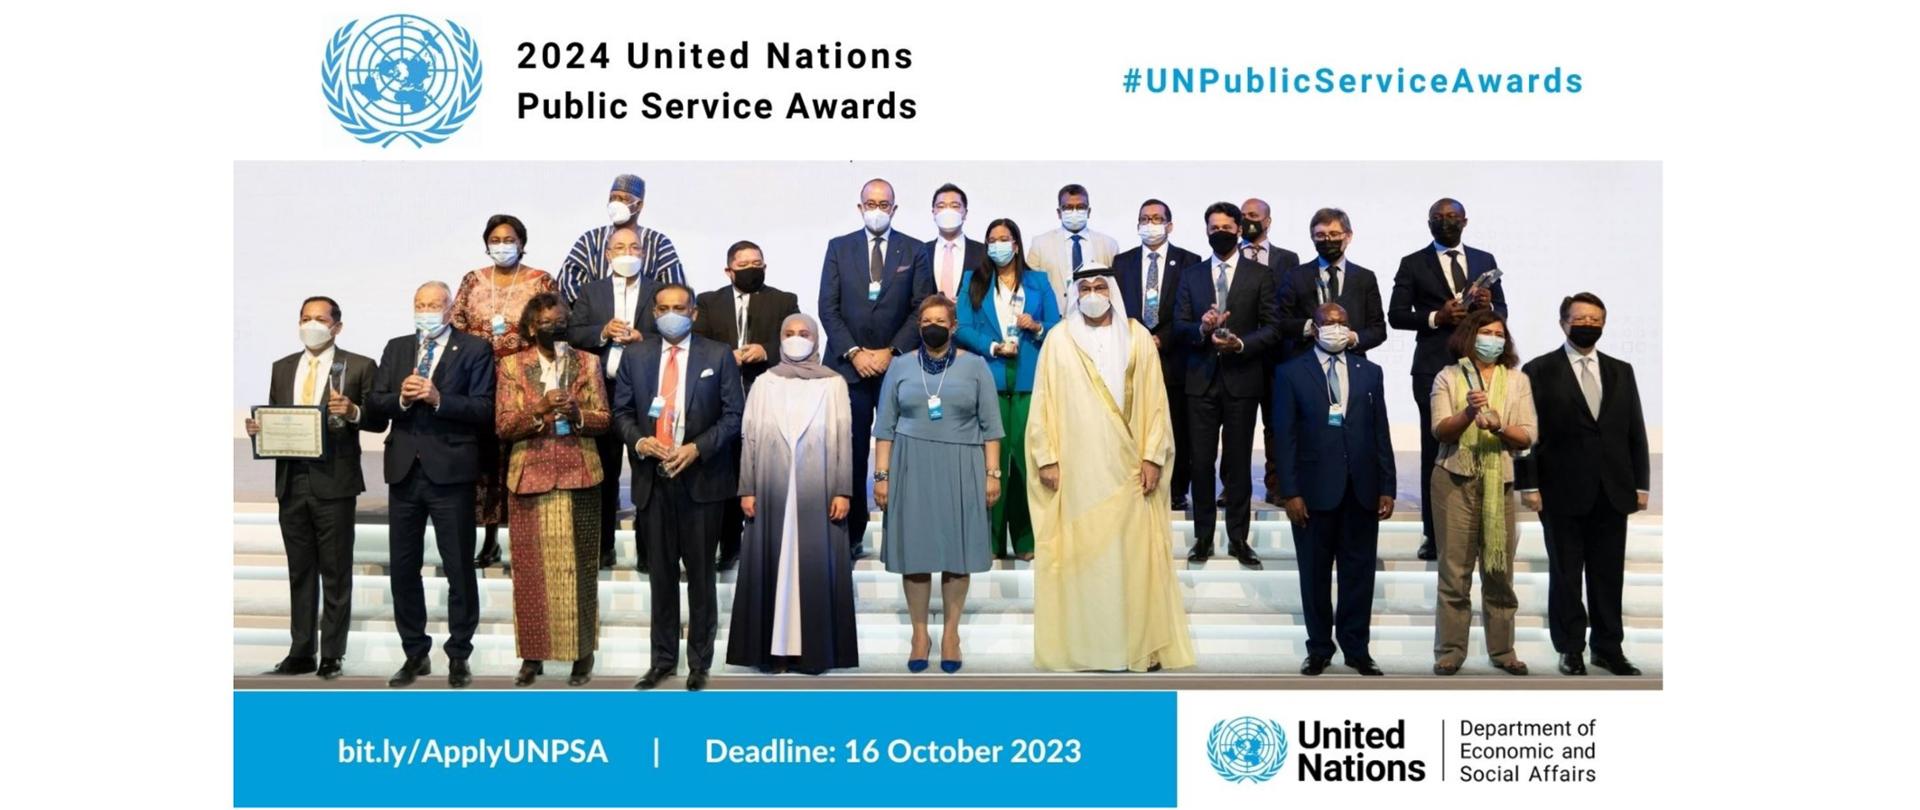 Kilkanaście osób pozuje na schodach do zdjęcia, mają maseczki na twarzach. Napis 2024 United Nations Public Service Awards.